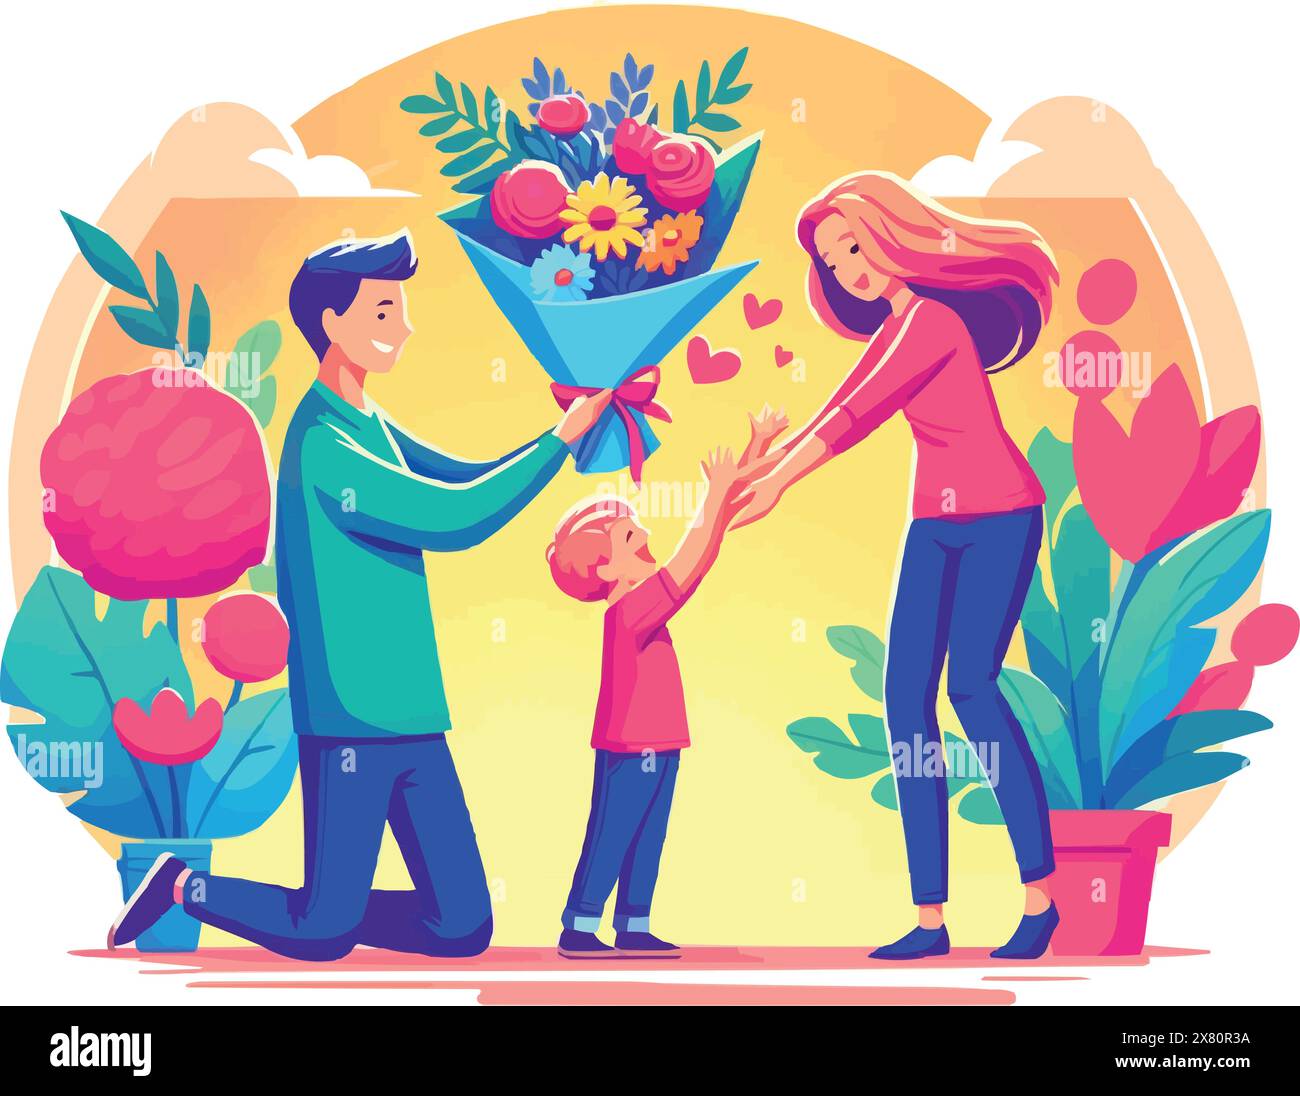 Am Elterntag erhält die Mutter einen großen Blumenstrauß von ihrem Sohn und Vater. Stock Vektor